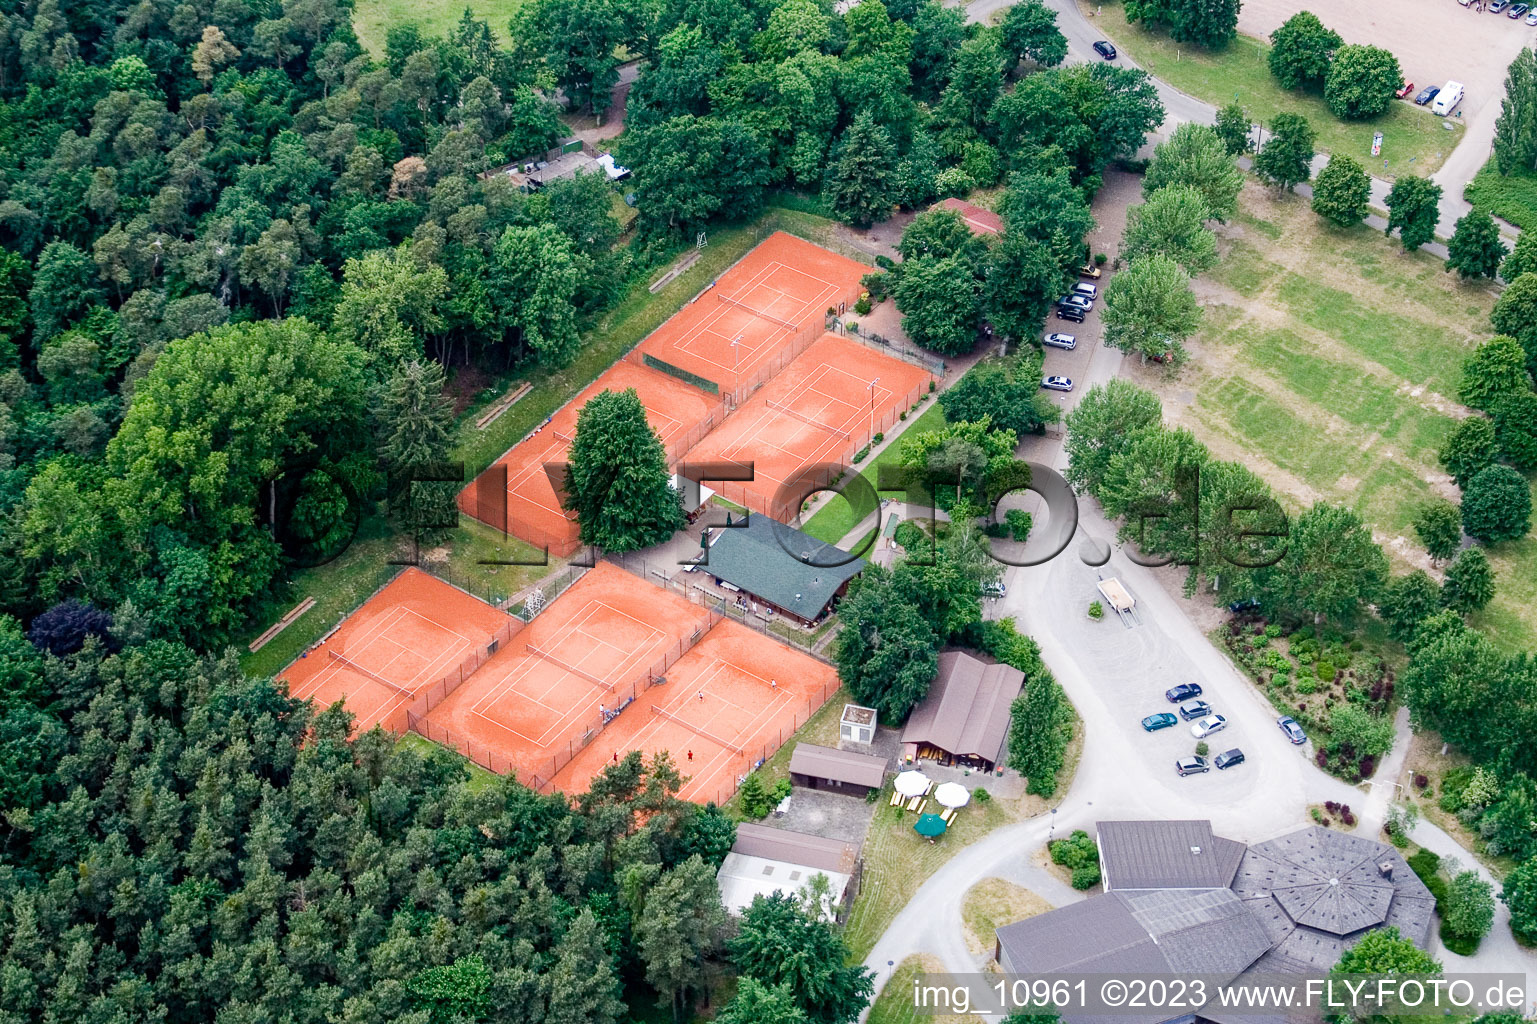 Club de tennis à Rülzheim dans le département Rhénanie-Palatinat, Allemagne depuis l'avion